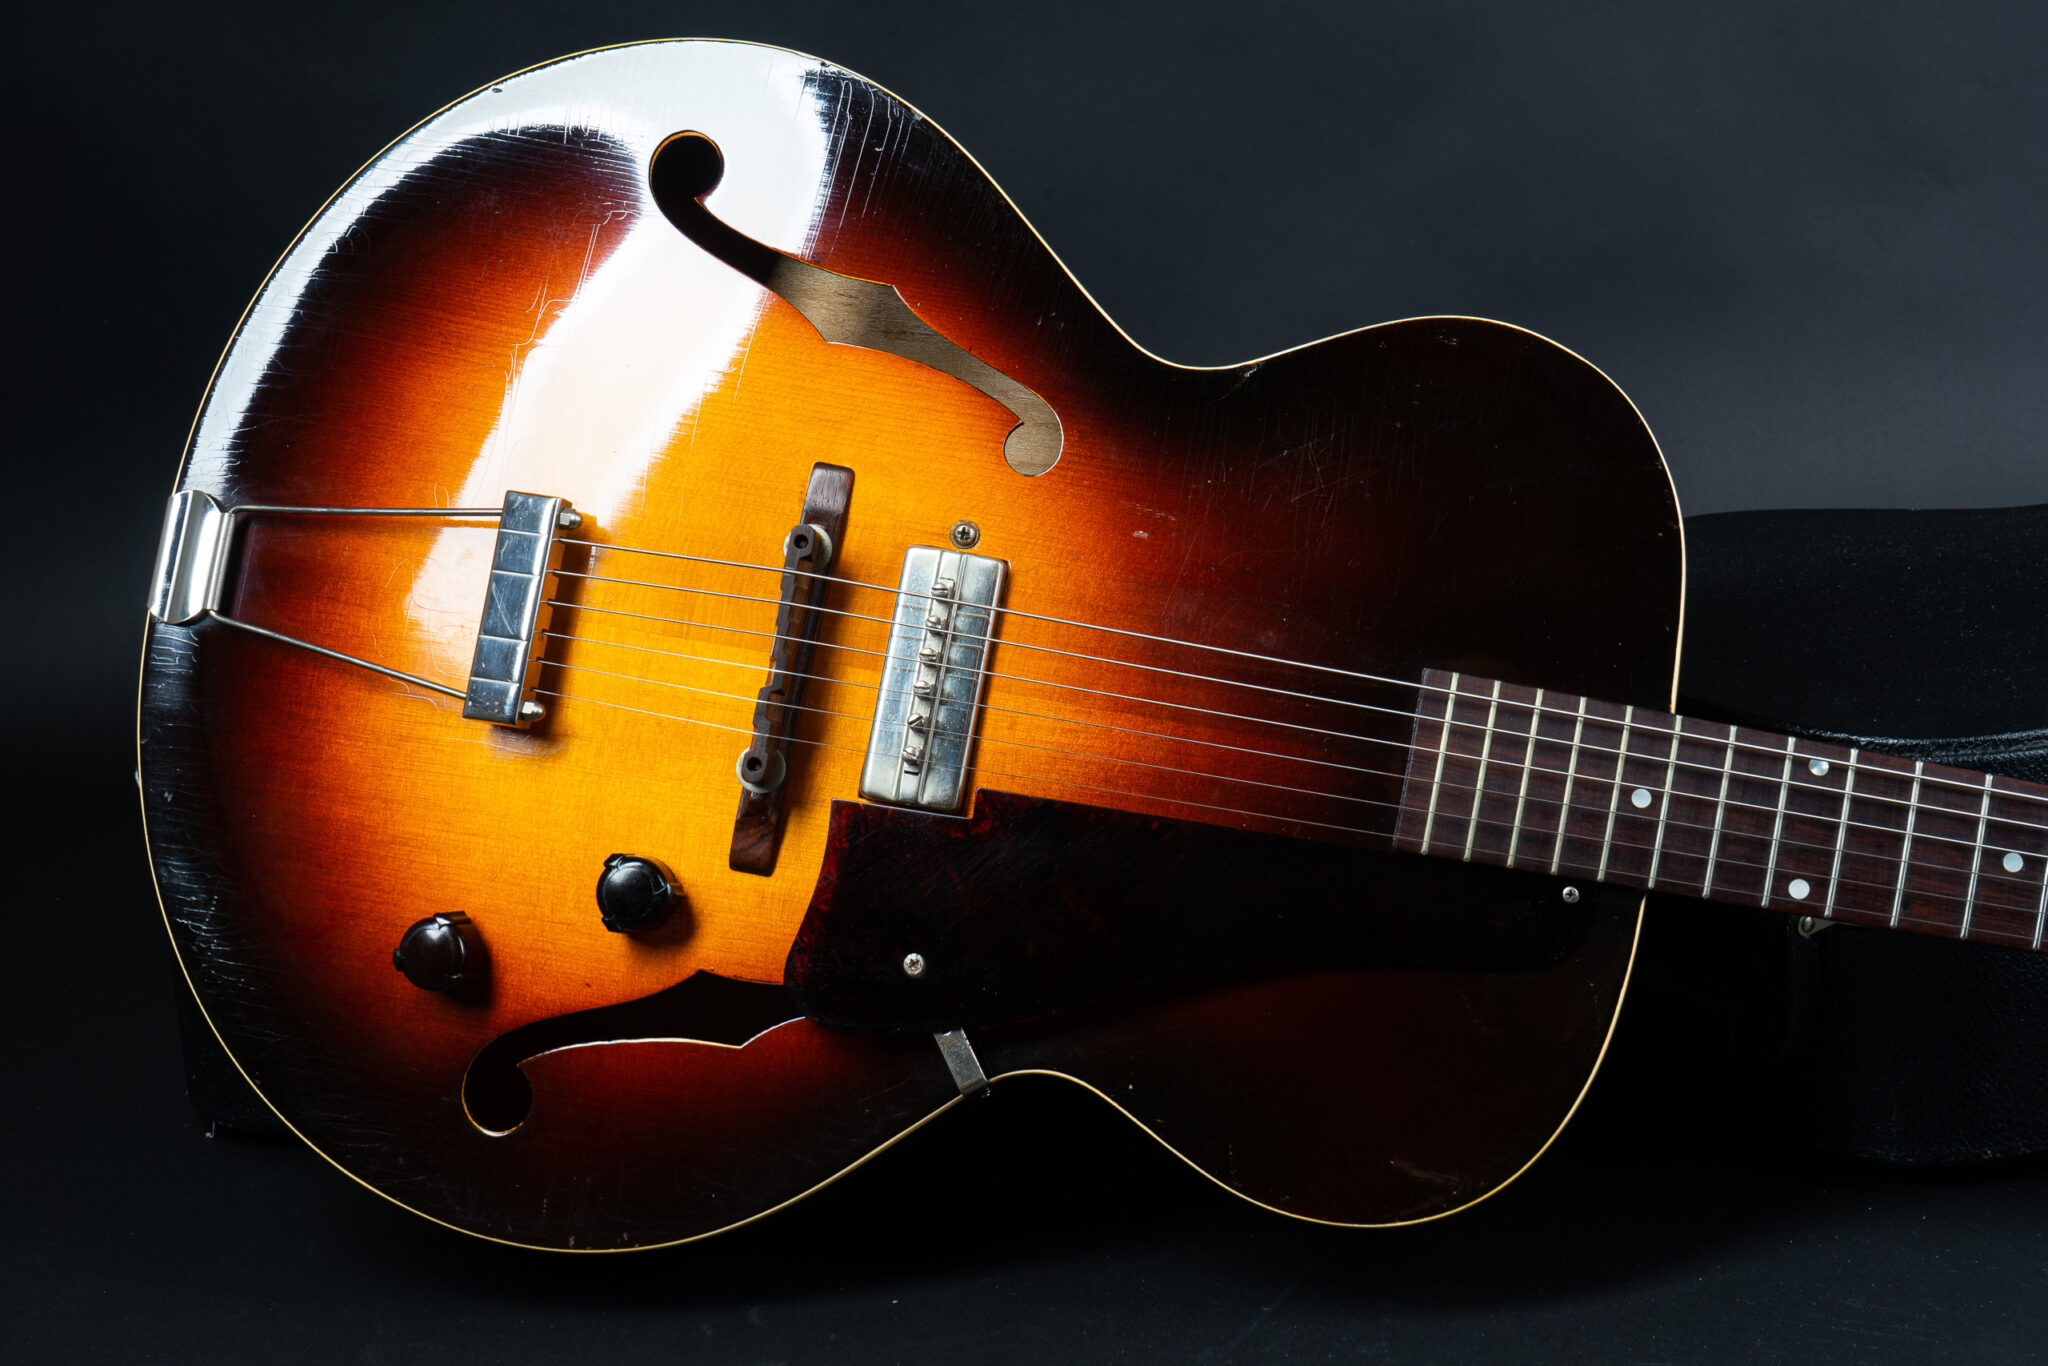 https://guitarpoint.de/app/uploads/products/1941-gibson-es-150-sunburst/1941-Gibson-ES-150-Sunburst-8-2048x1366.jpg